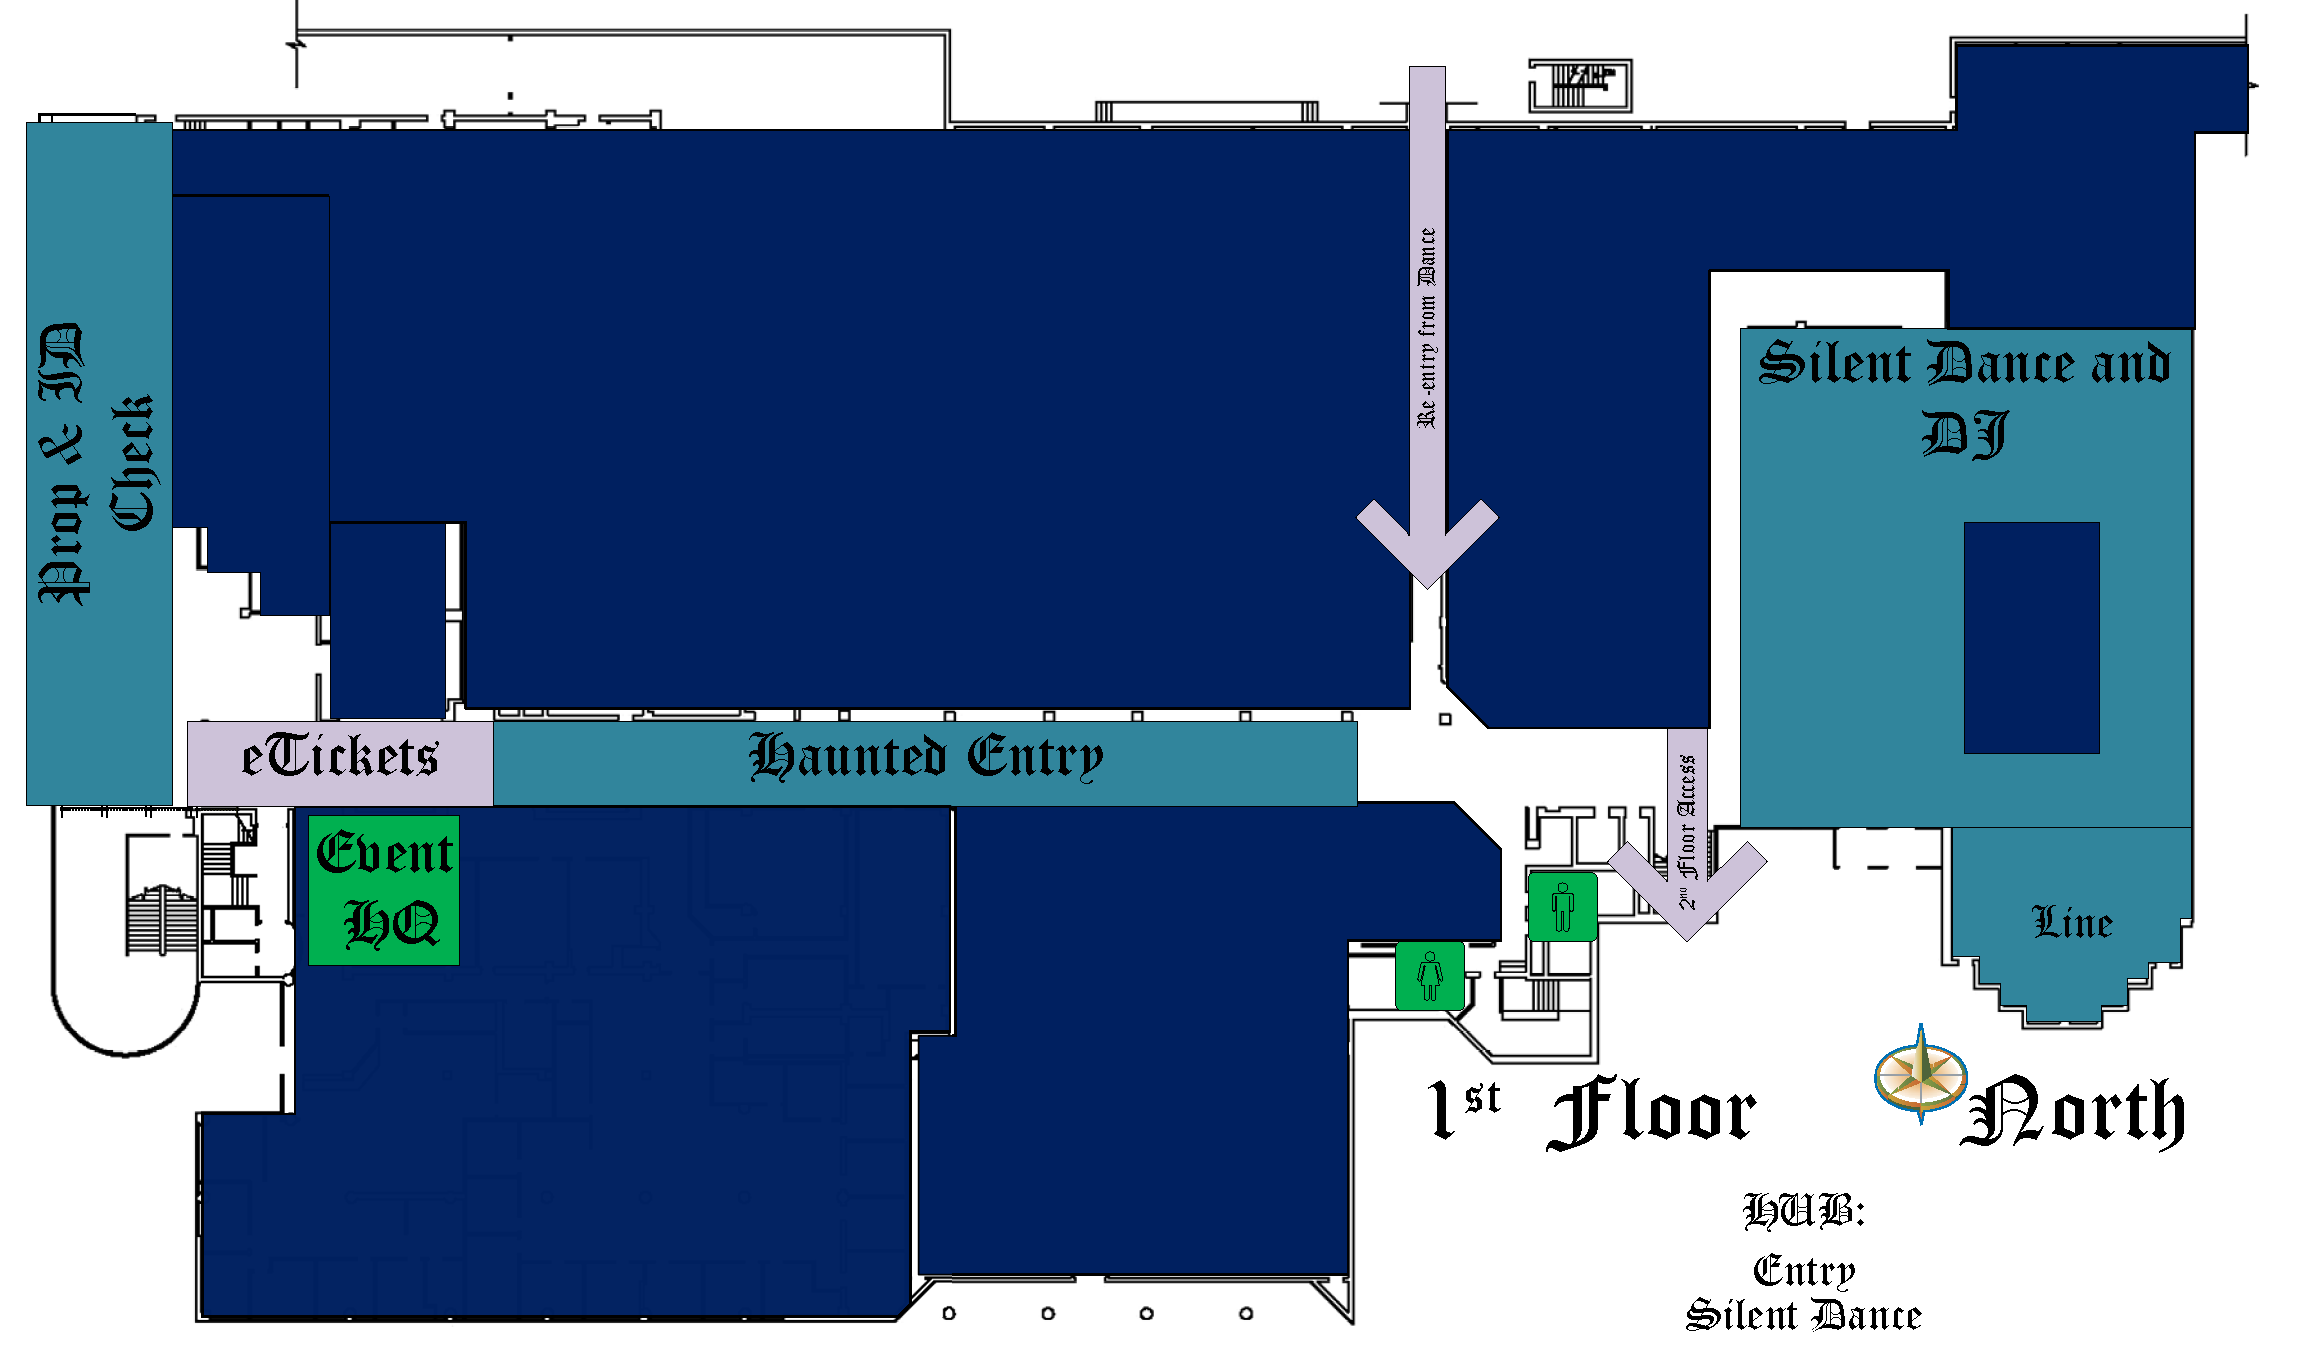 1st Floor Map